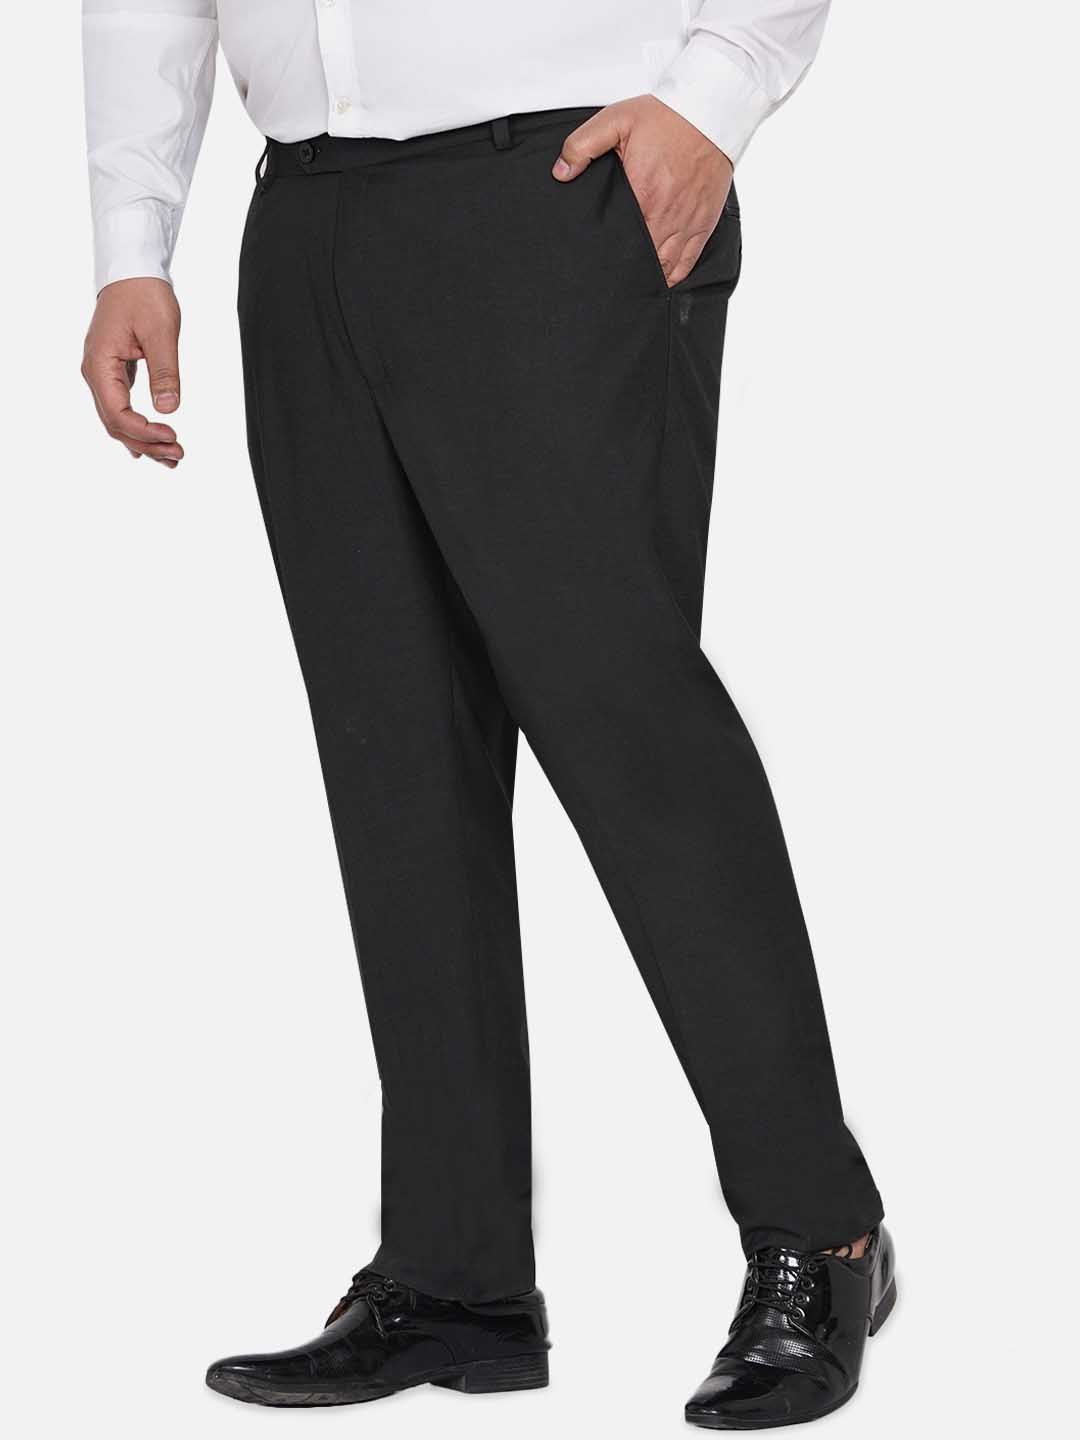 bottomwear/trousers/JPTR22010G/jptr22010g-4.jpg